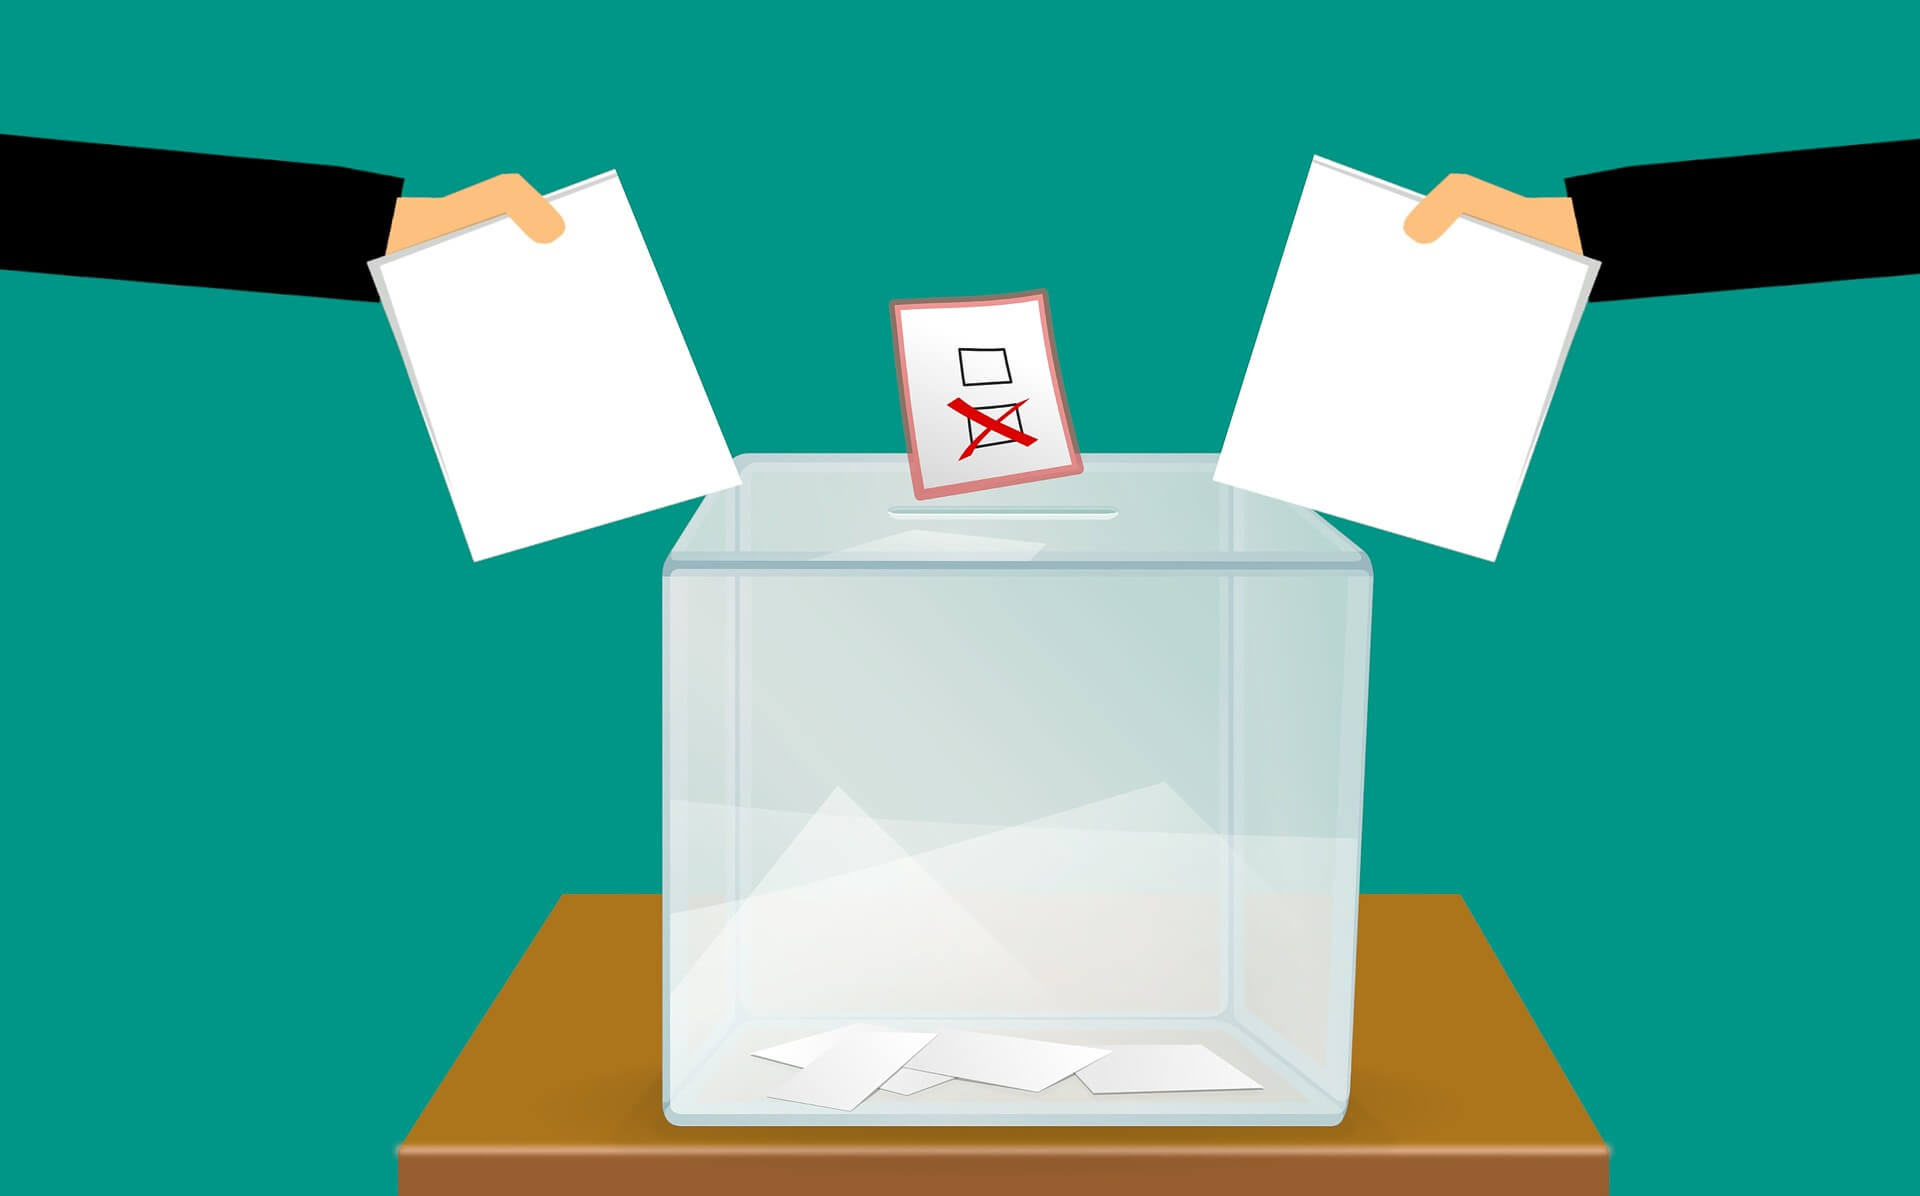 Landtagswahl in NRW: Nein, man darf Wahlzettel nicht unterschreiben – das macht die Stimme ungültig